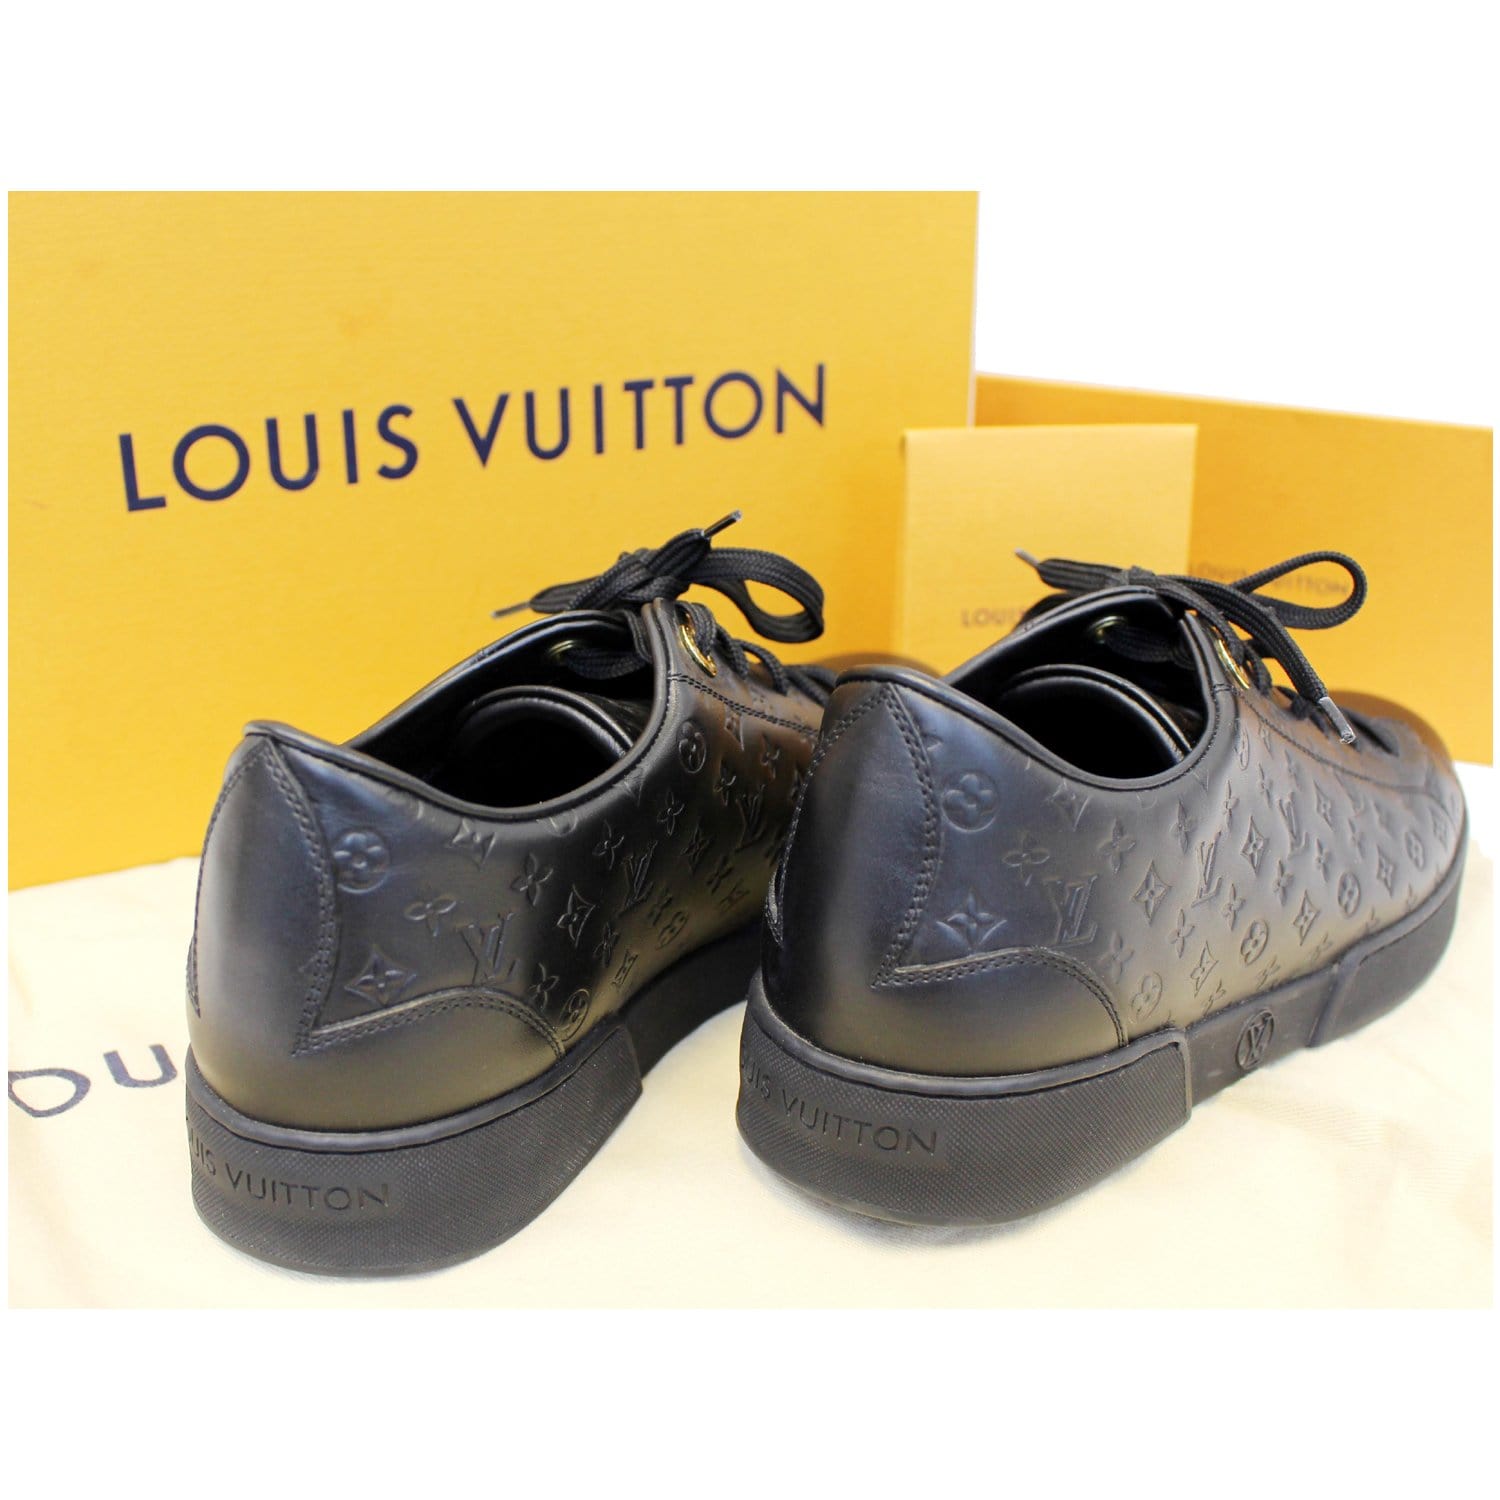 Mẫu áo sơ mi cộc tay Louis Vuitton hoạ tiết độc đạo, giá tốt